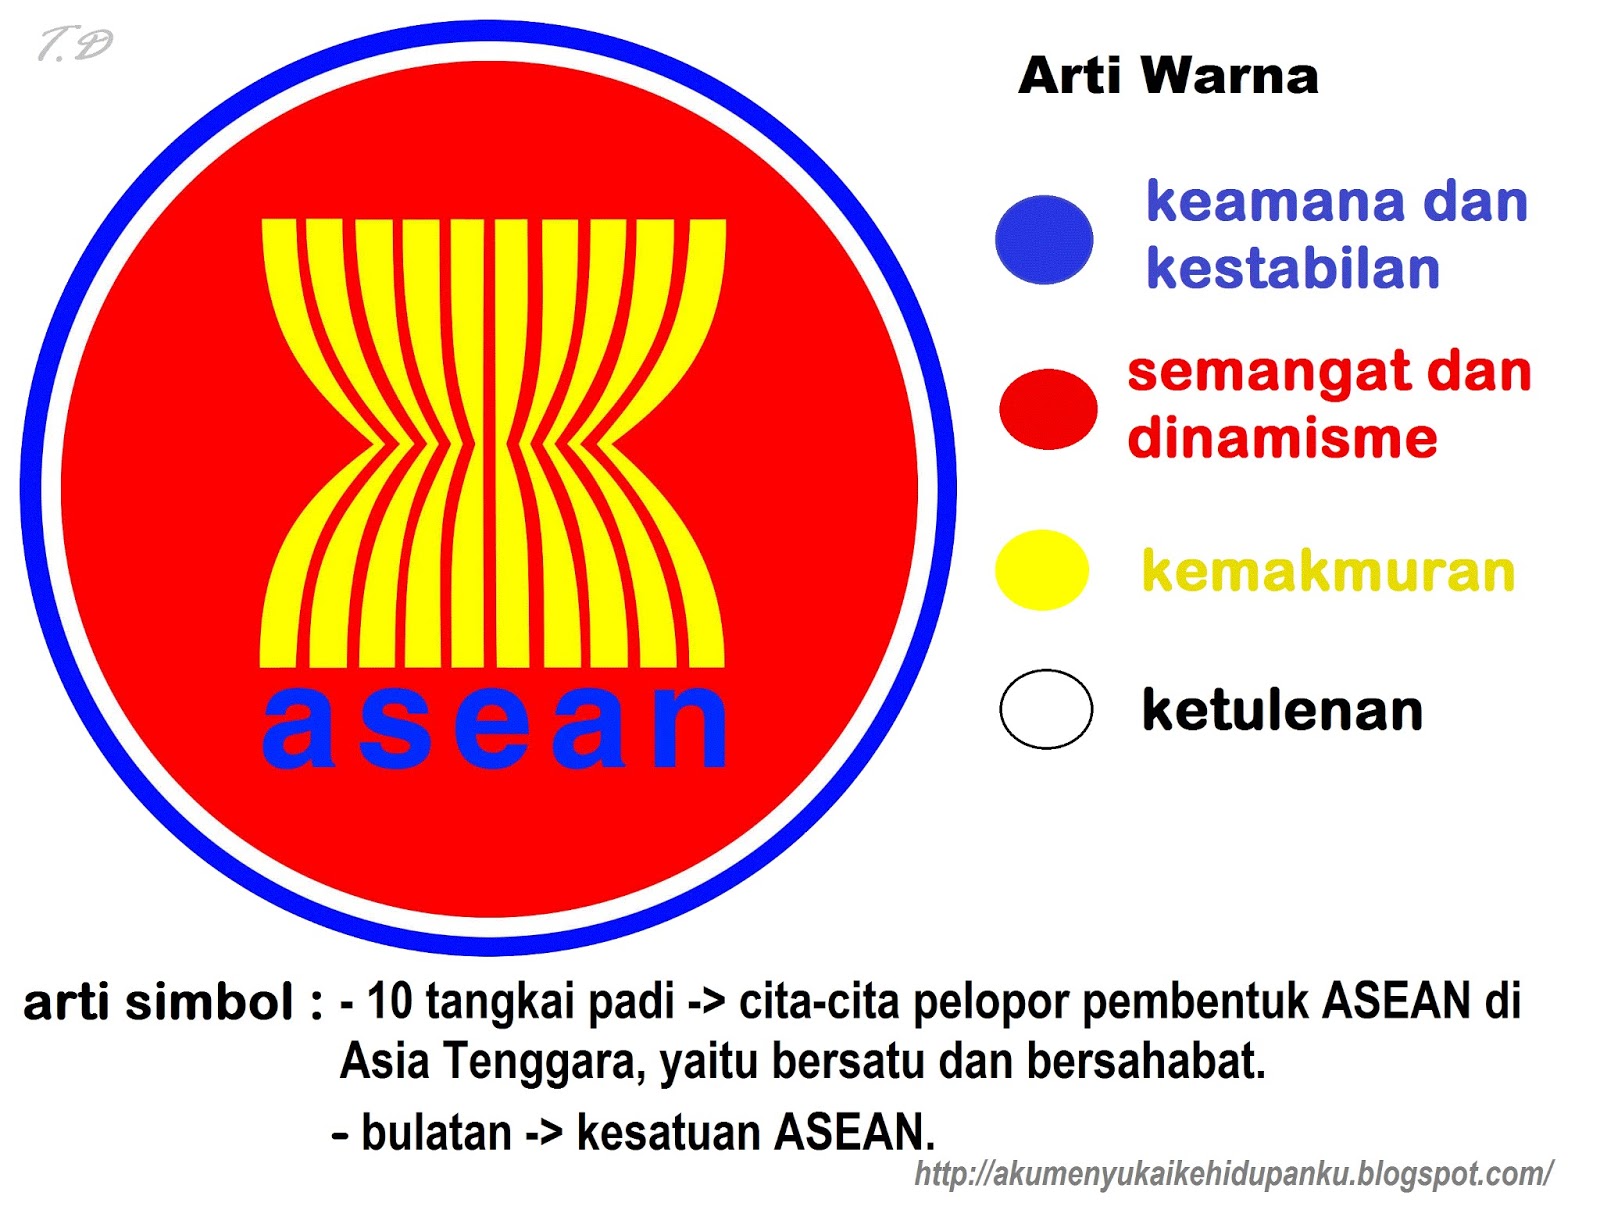 GURU KREATIF: ARTI WARNA DAN ARTI SIMBOL LOGO ASEAN